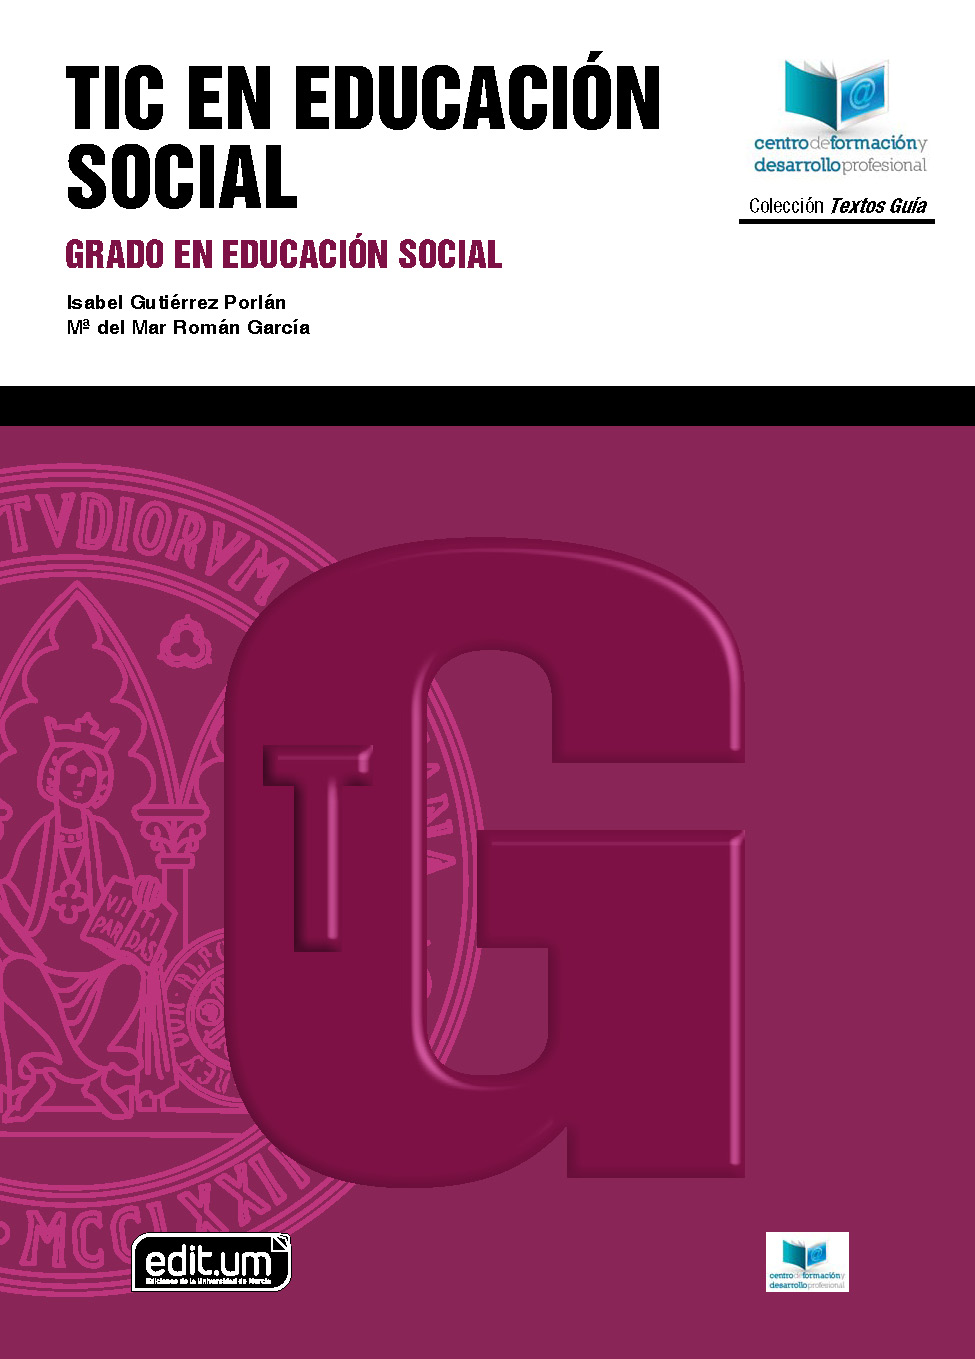 Imagen de portada del libro TIC en educación social